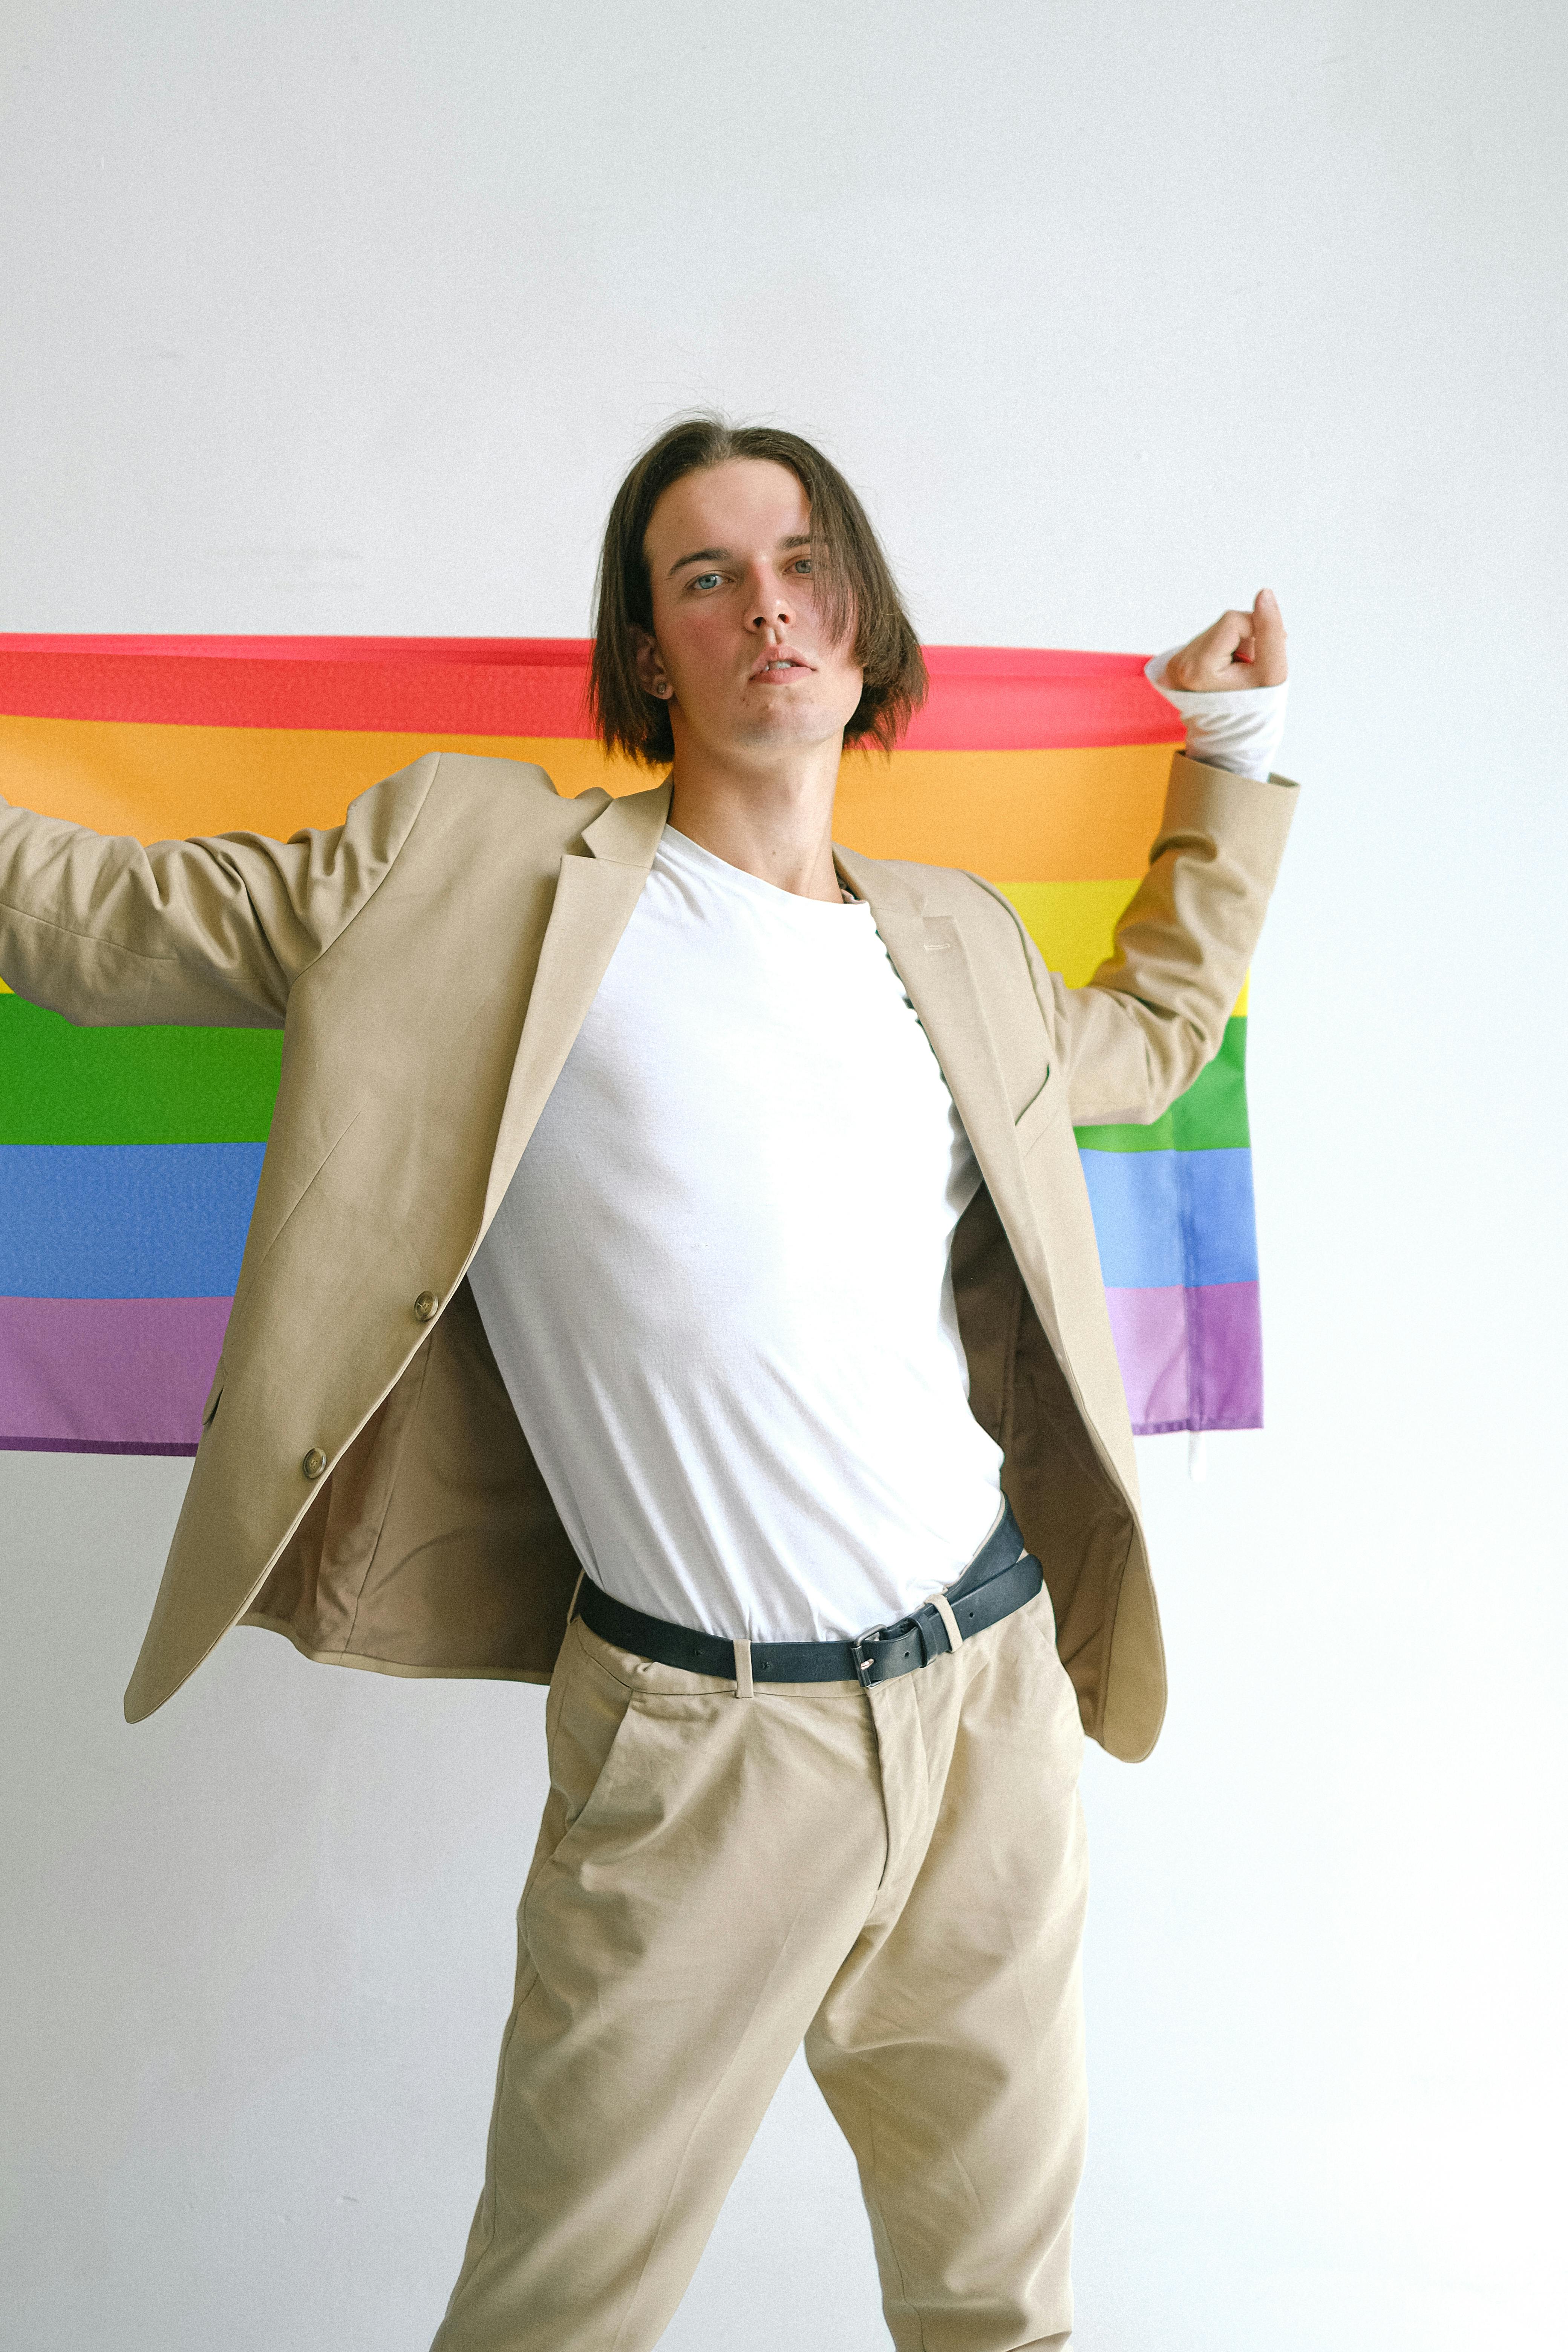 Foto de stock gratuita sobre bandera del orgullo gay, bandera lgbt, camiseta blanca